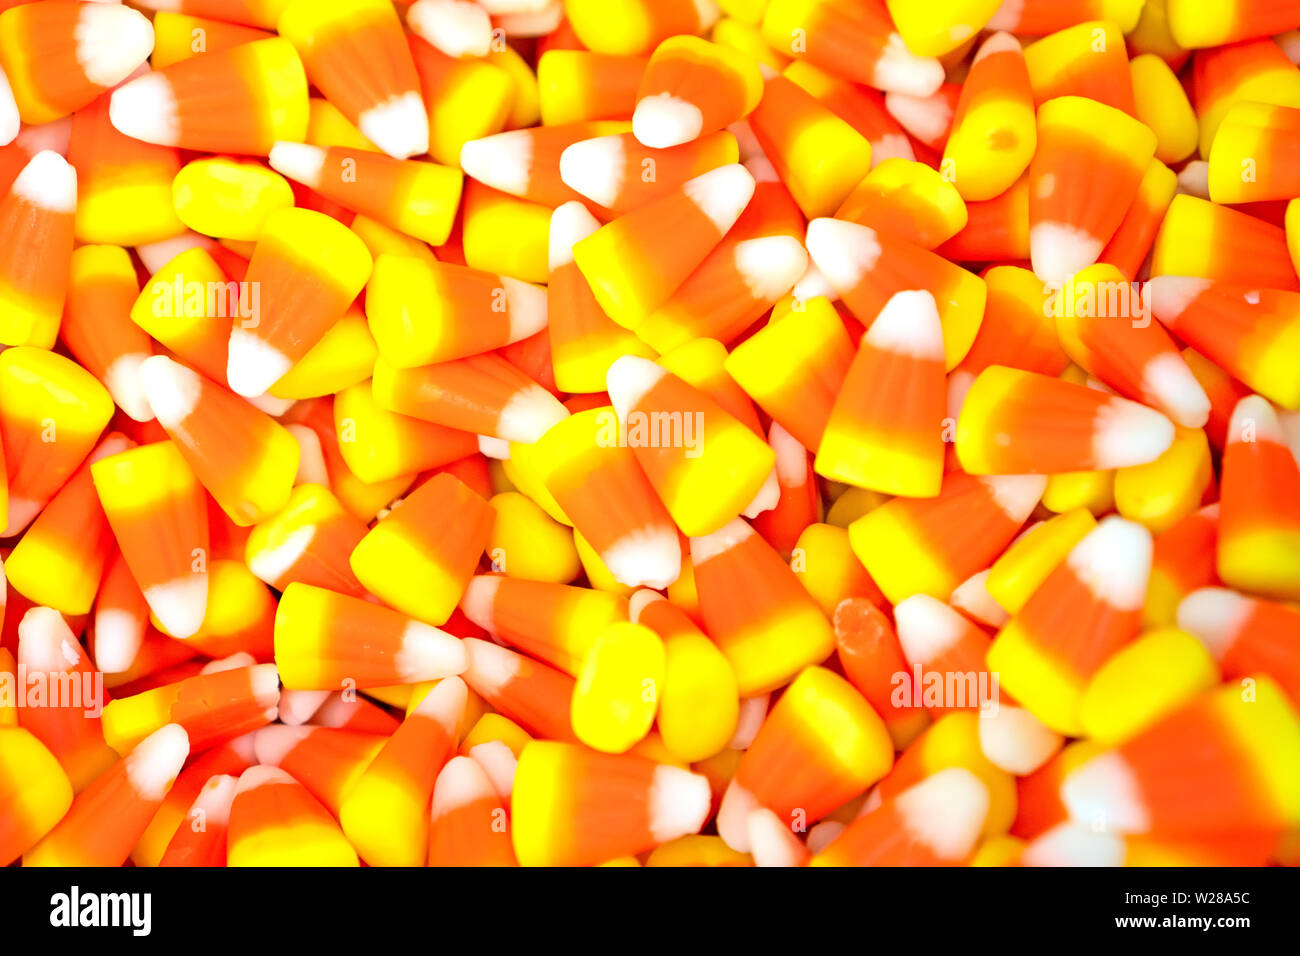 Cereali caramellati, tradizionale bianco, arancio e giallo colori. Foto Stock